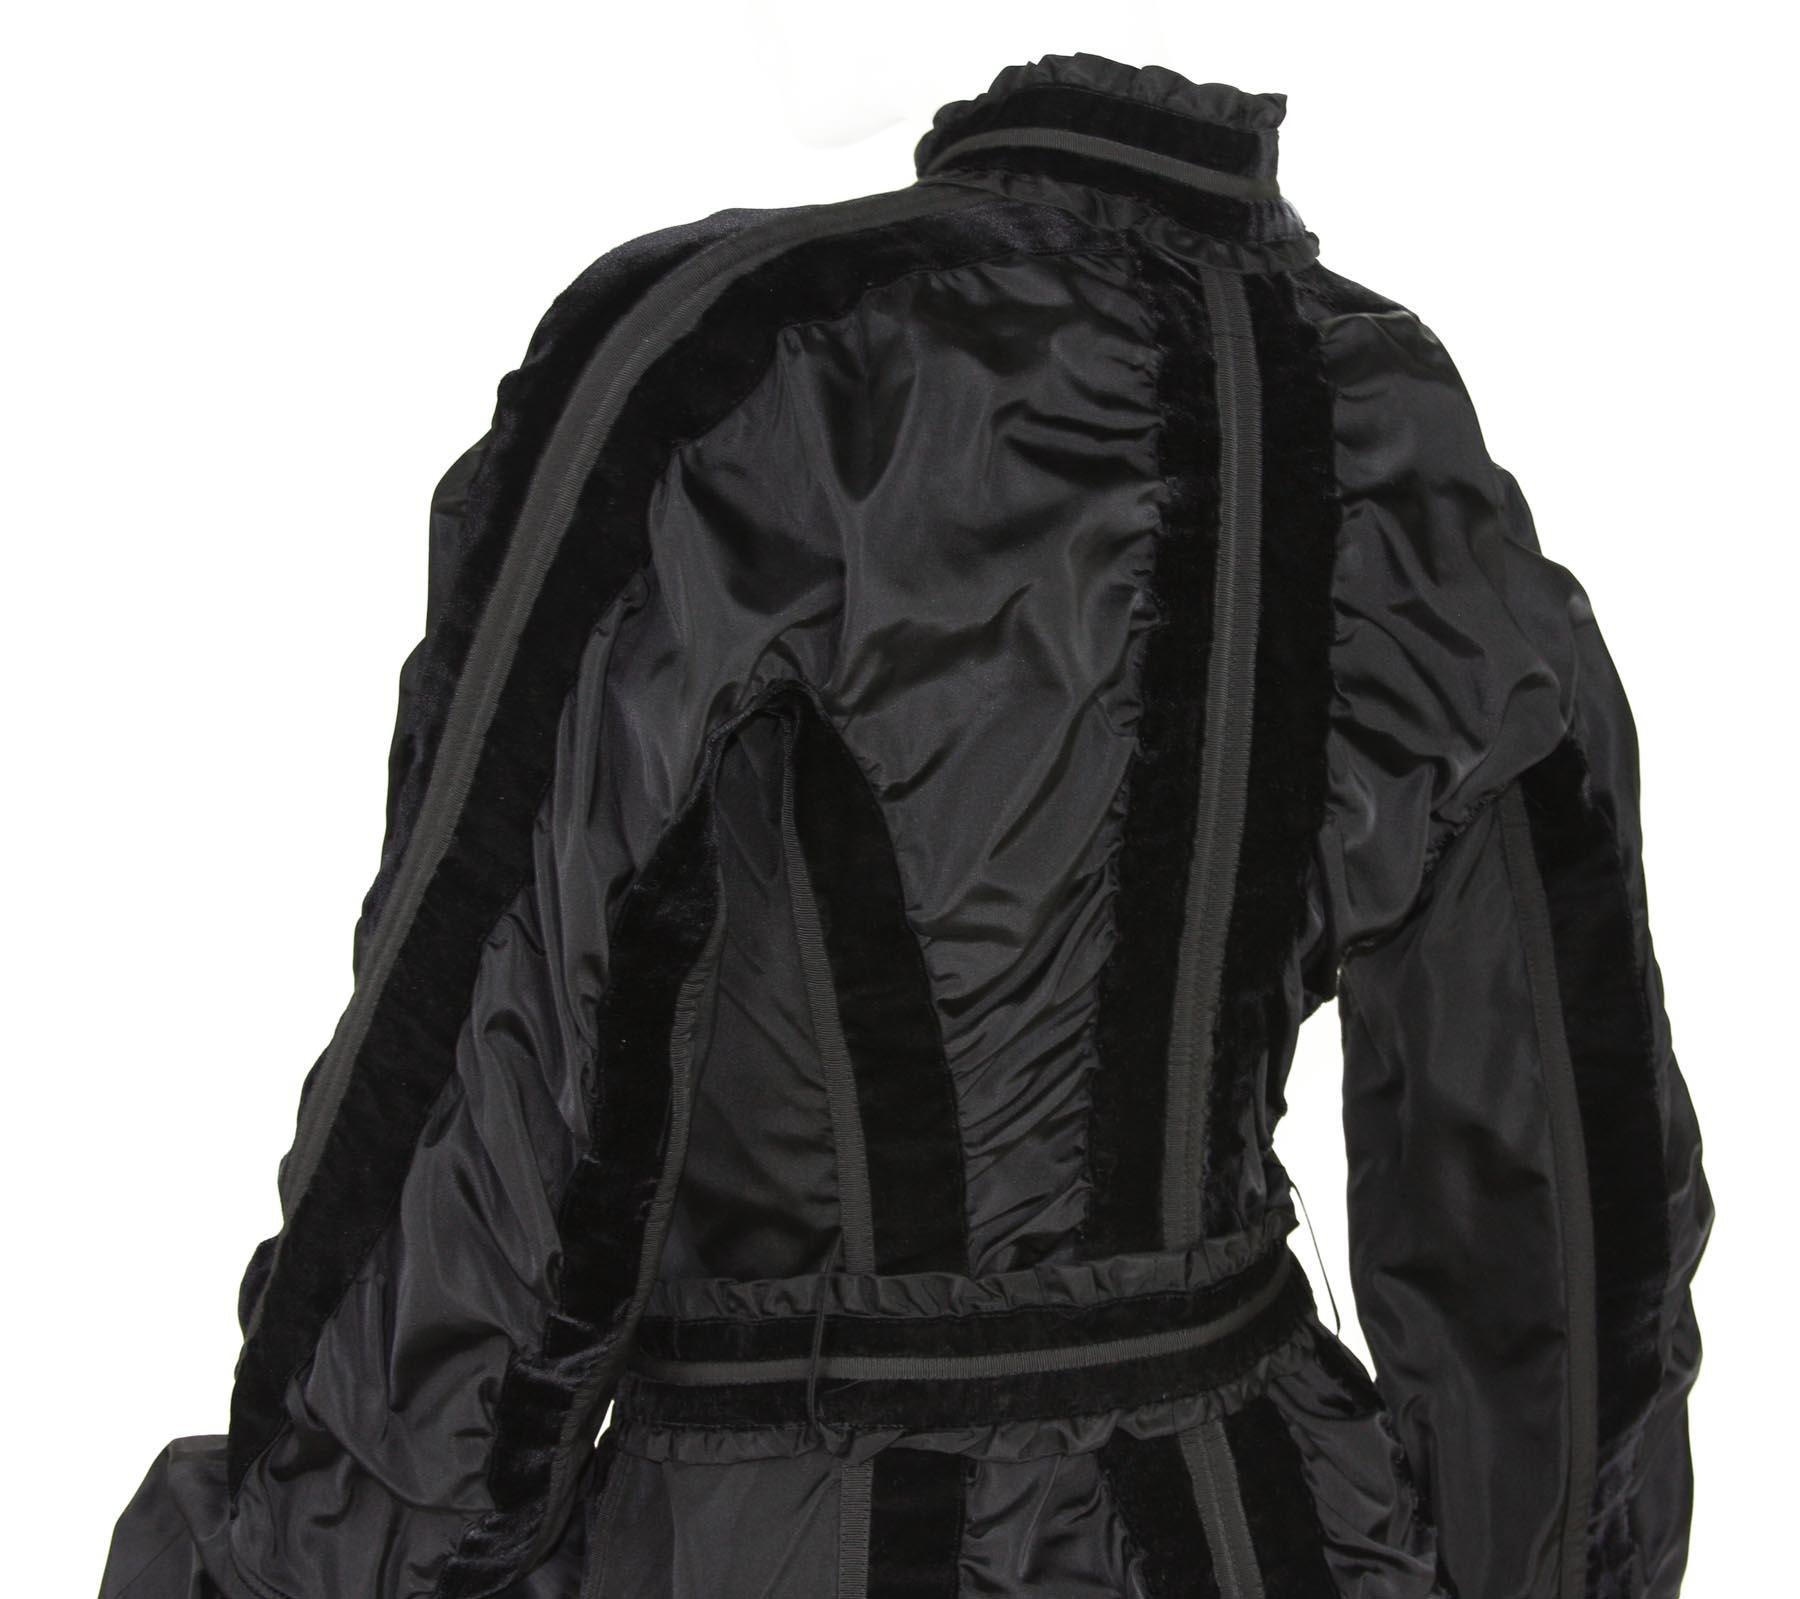 Tom Ford for Yves Saint Laurent FW 2002 Collection Black Taffeta Velvet Jacket 6 For Sale 6